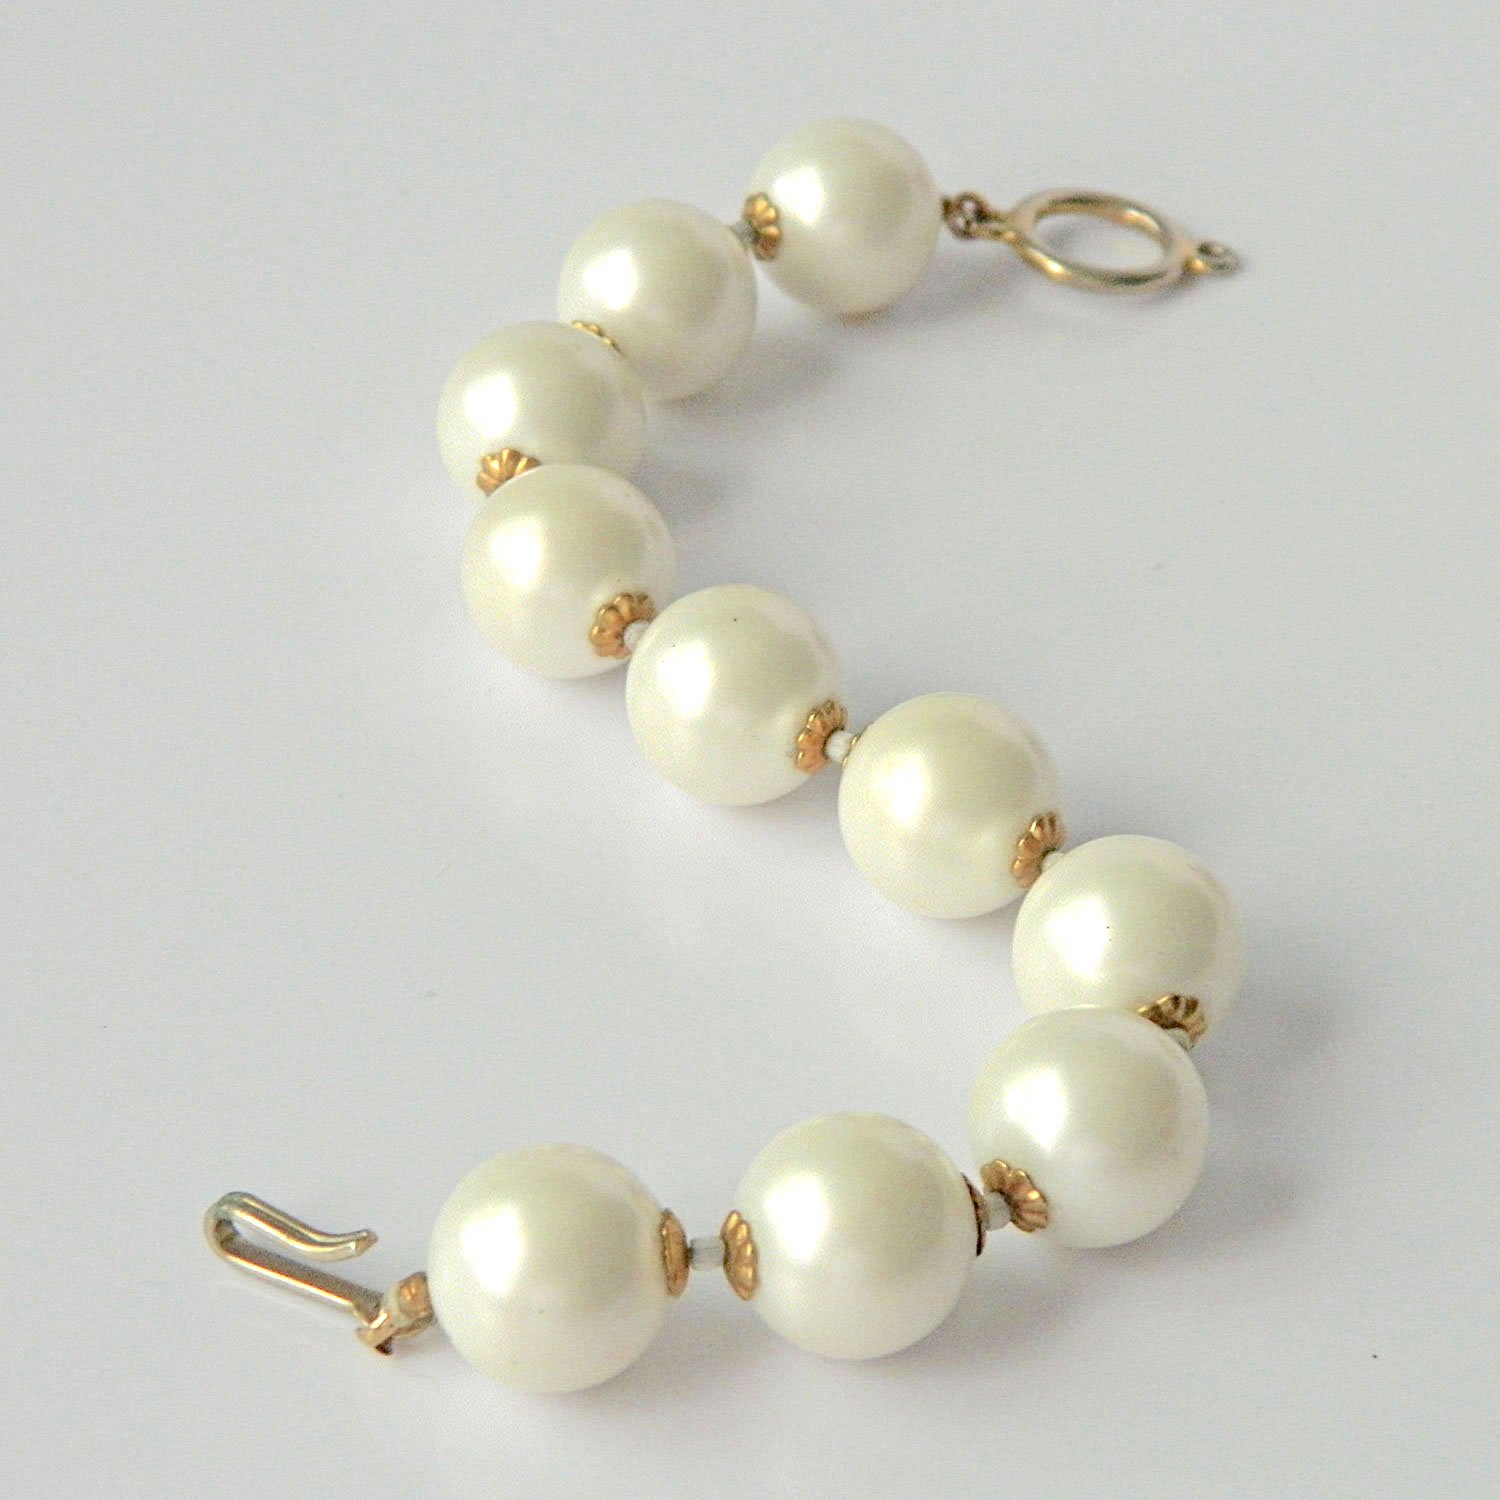 Vintage faux pearl bracelet